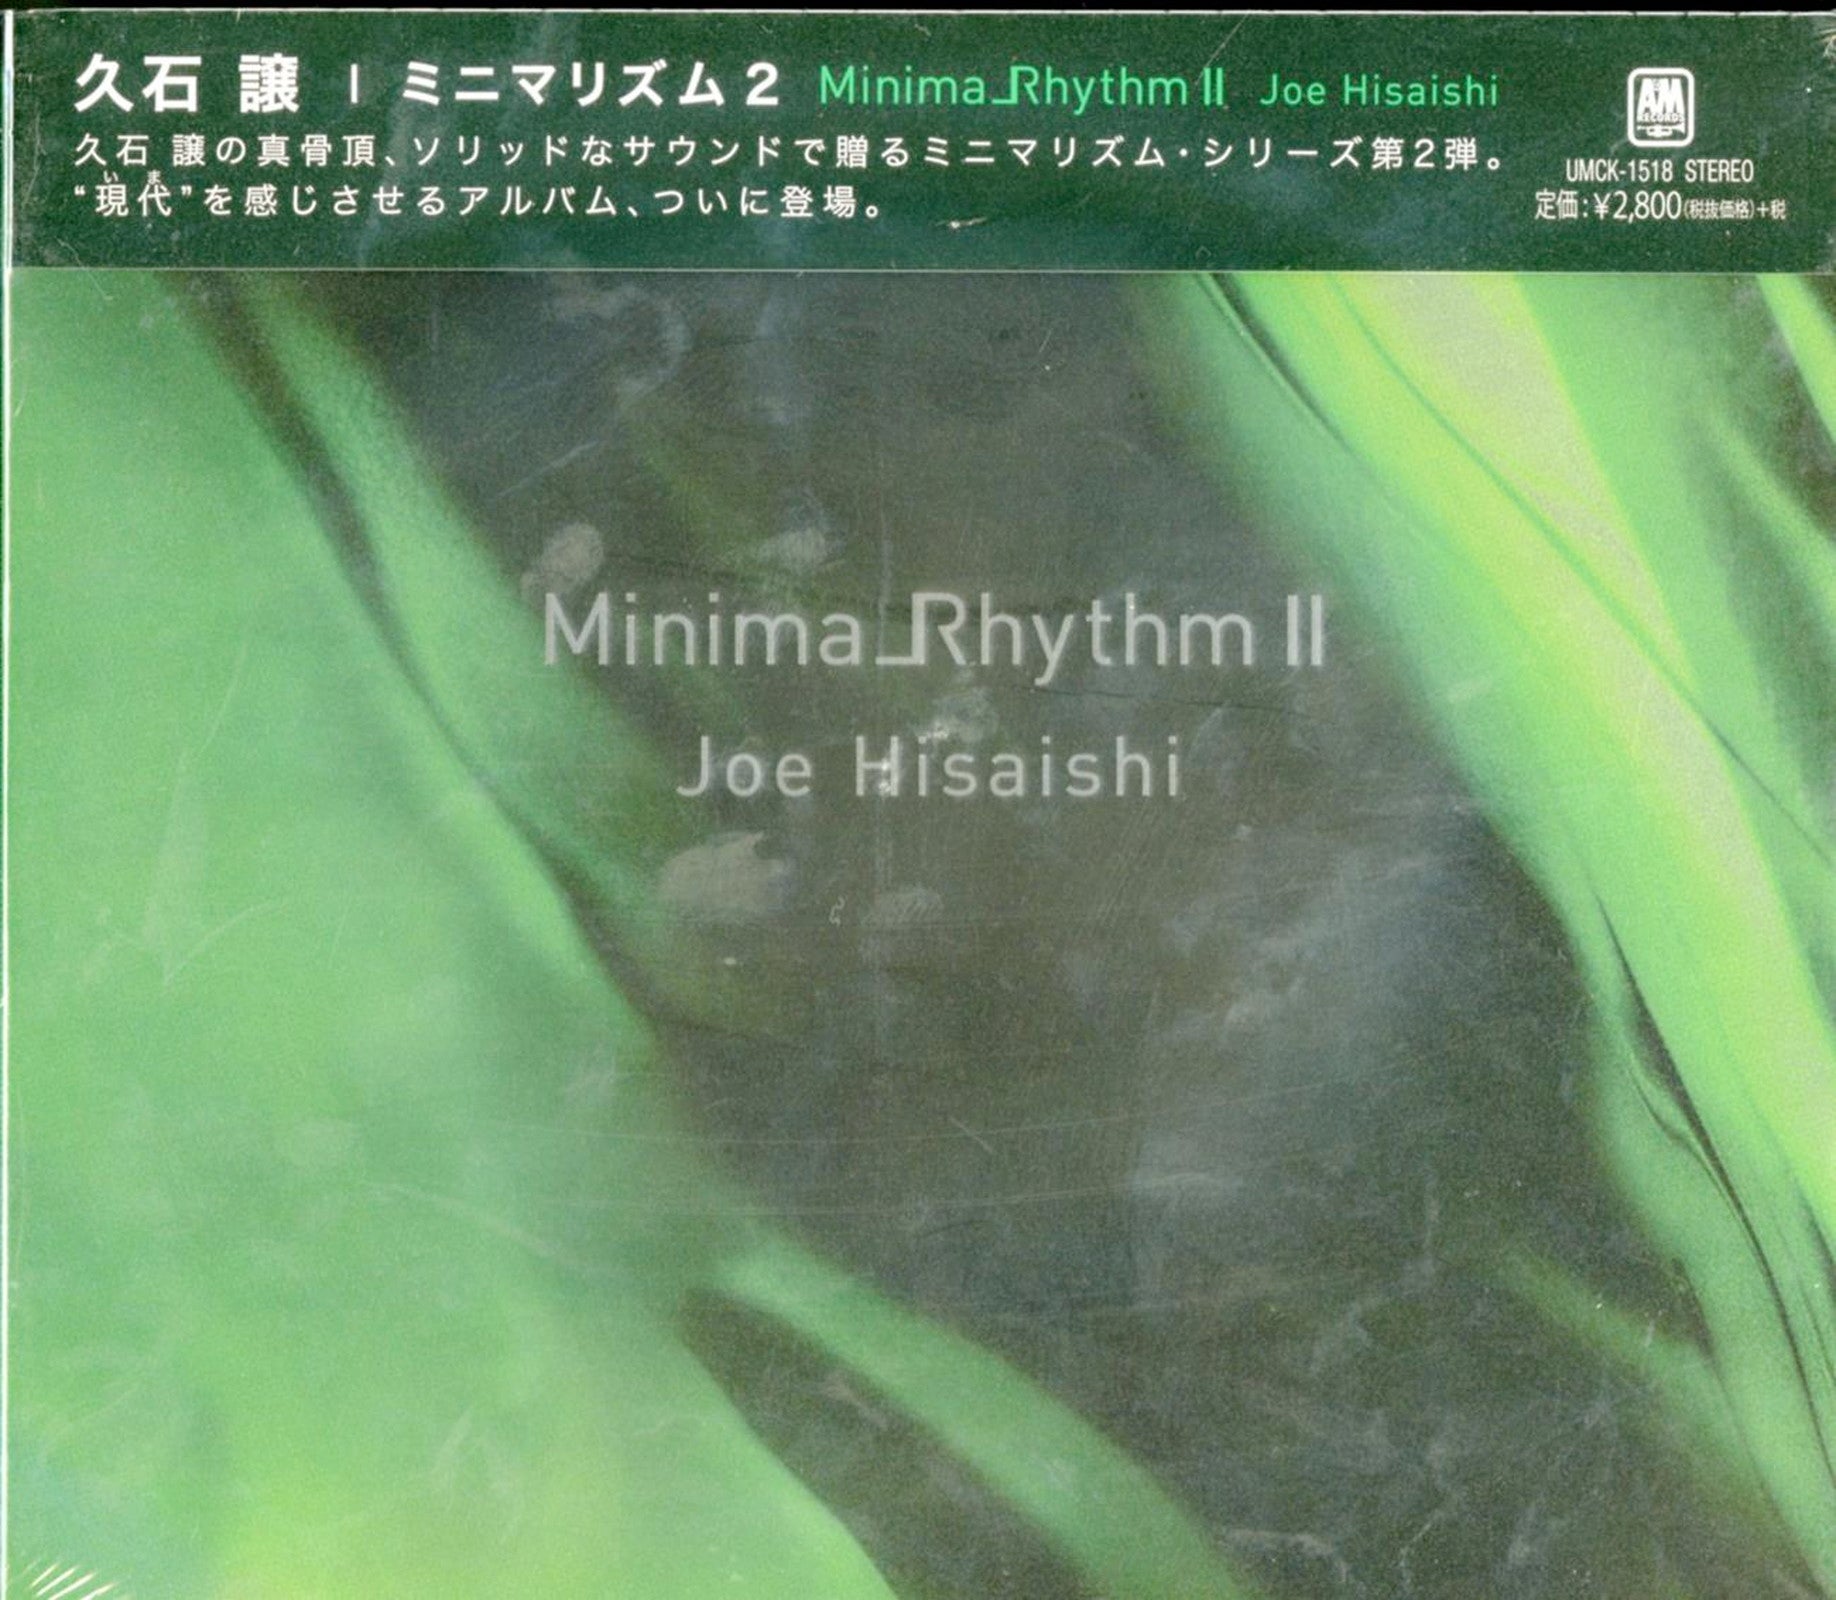 Joe Hisaishi - Minimalrhythm 2 - Japan CD – CDs Vinyl Japan Store 2015